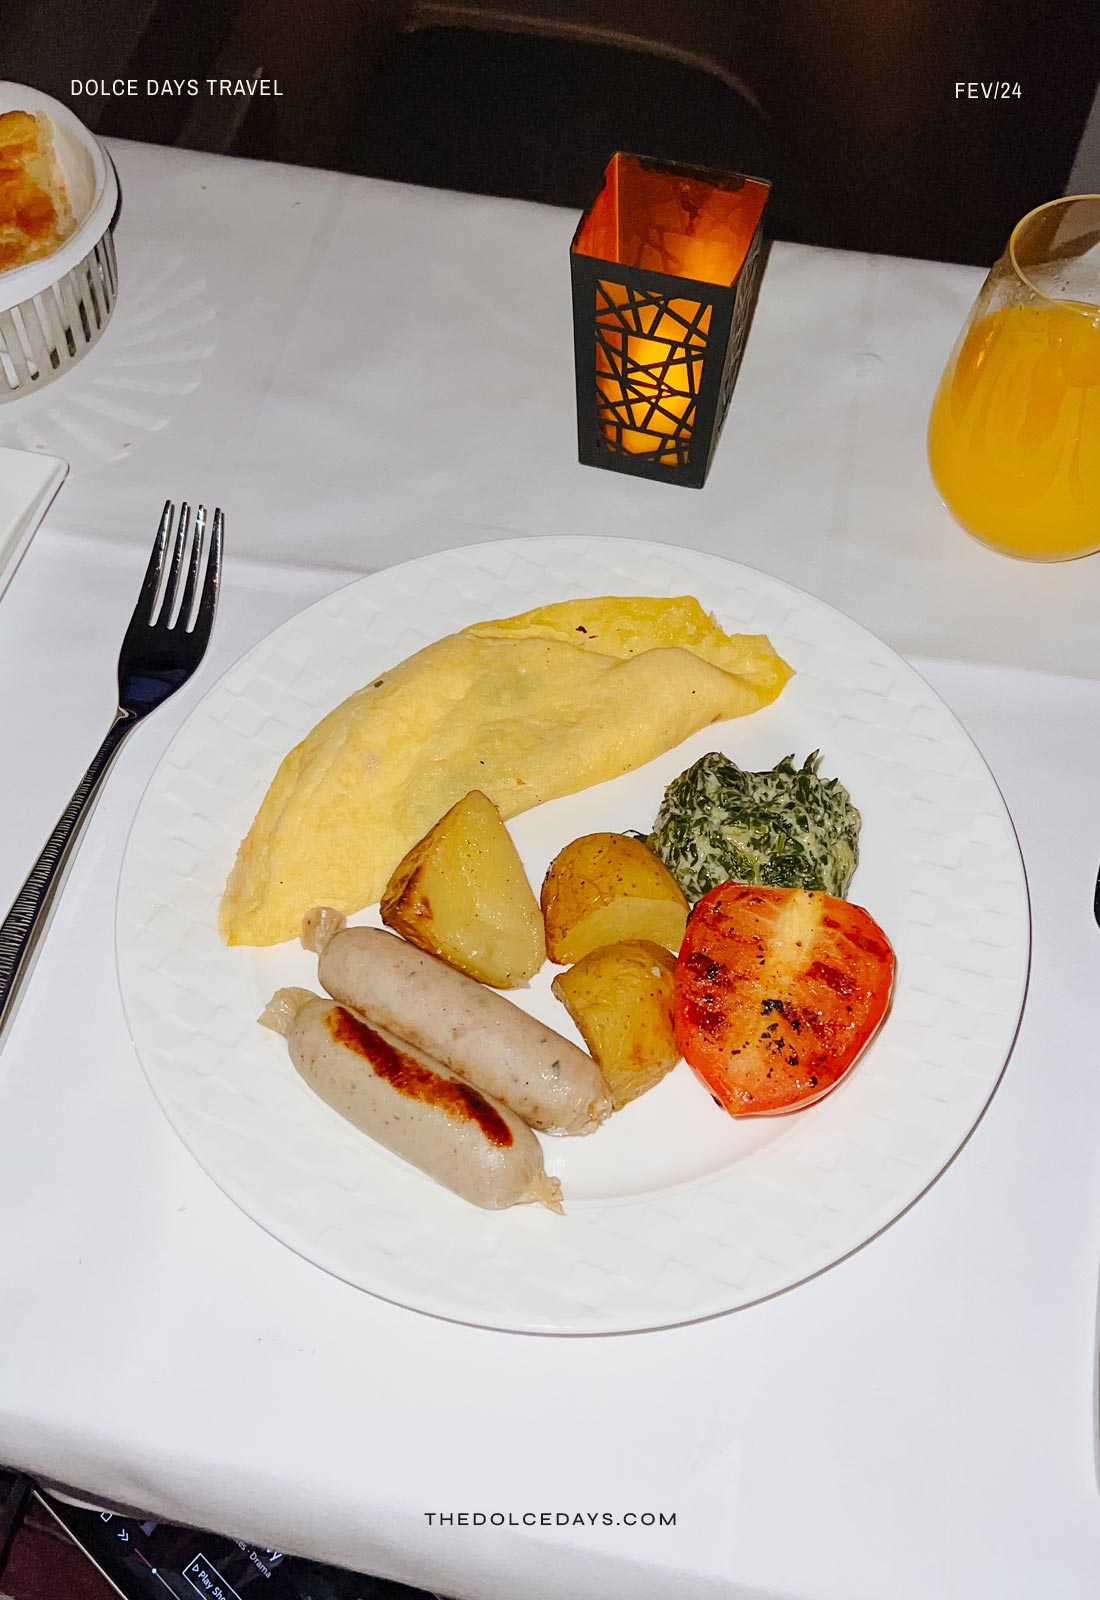 Café da manhã na executiva Qsuite Qatar Airways no Boeing 777-200 ER